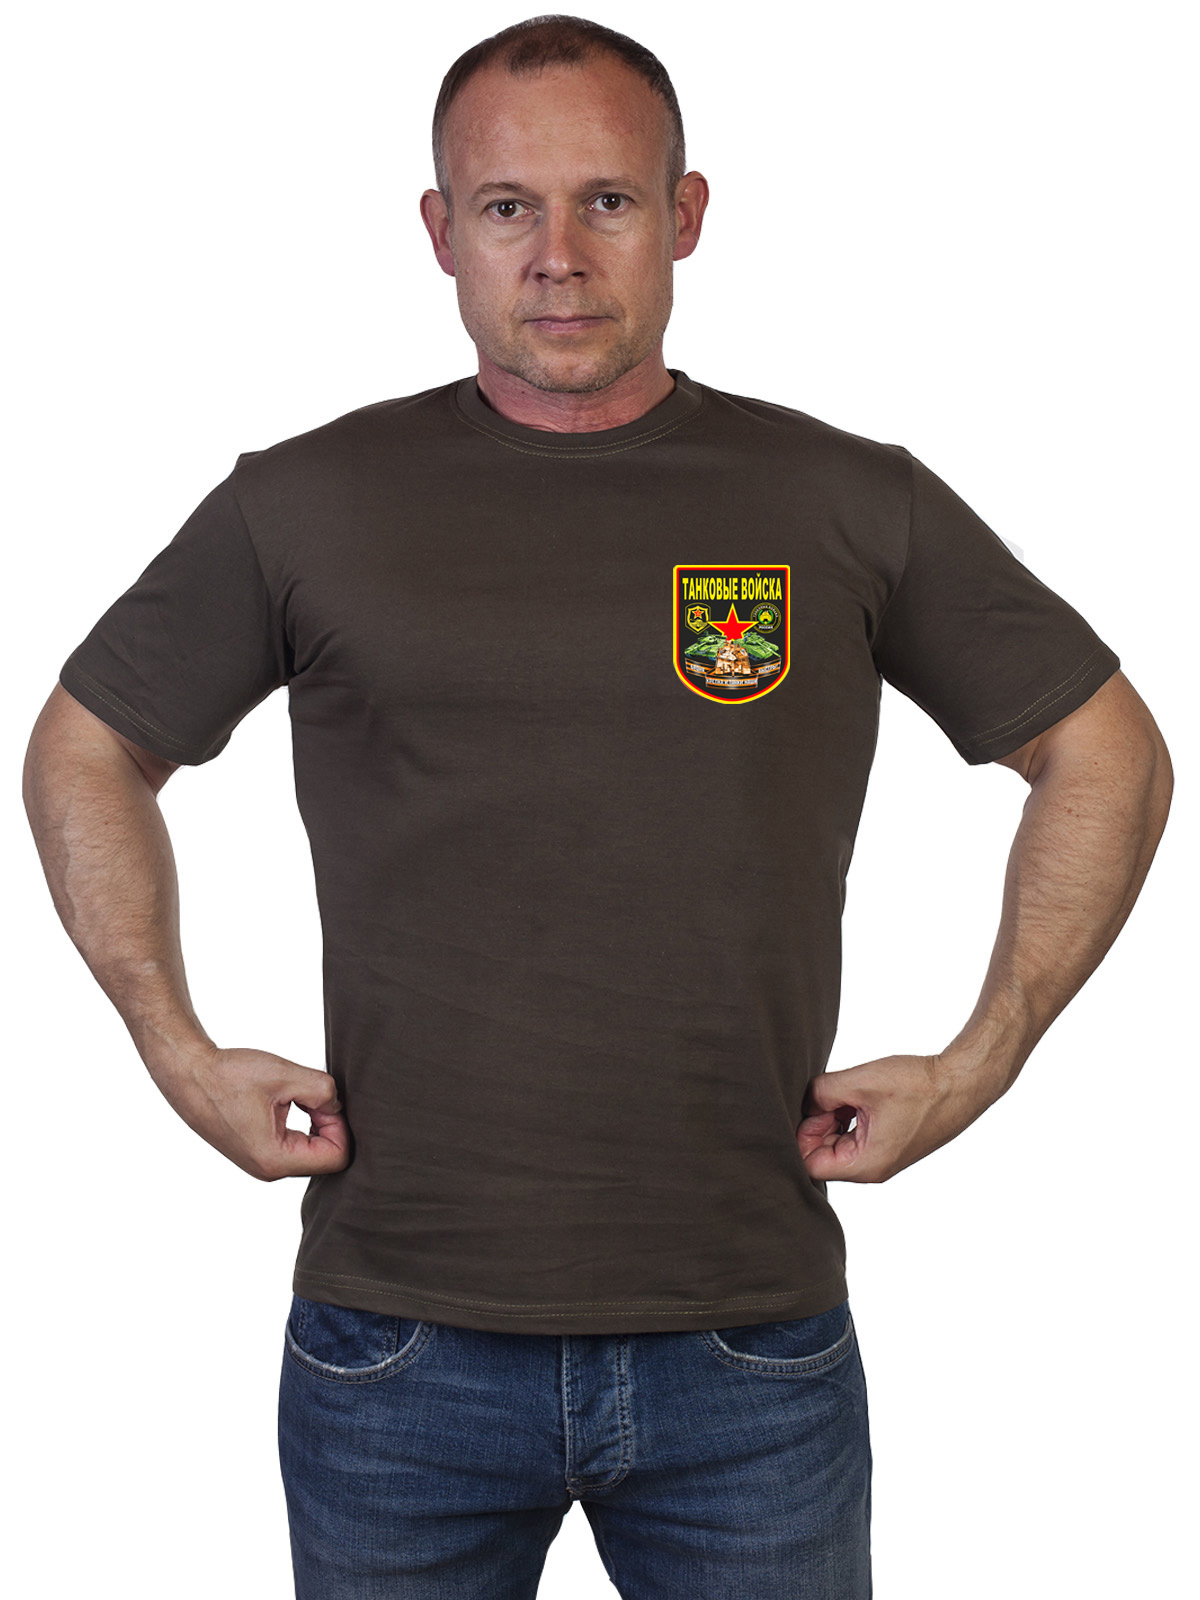 Оливковая милитари футболка «Танковые войска» 